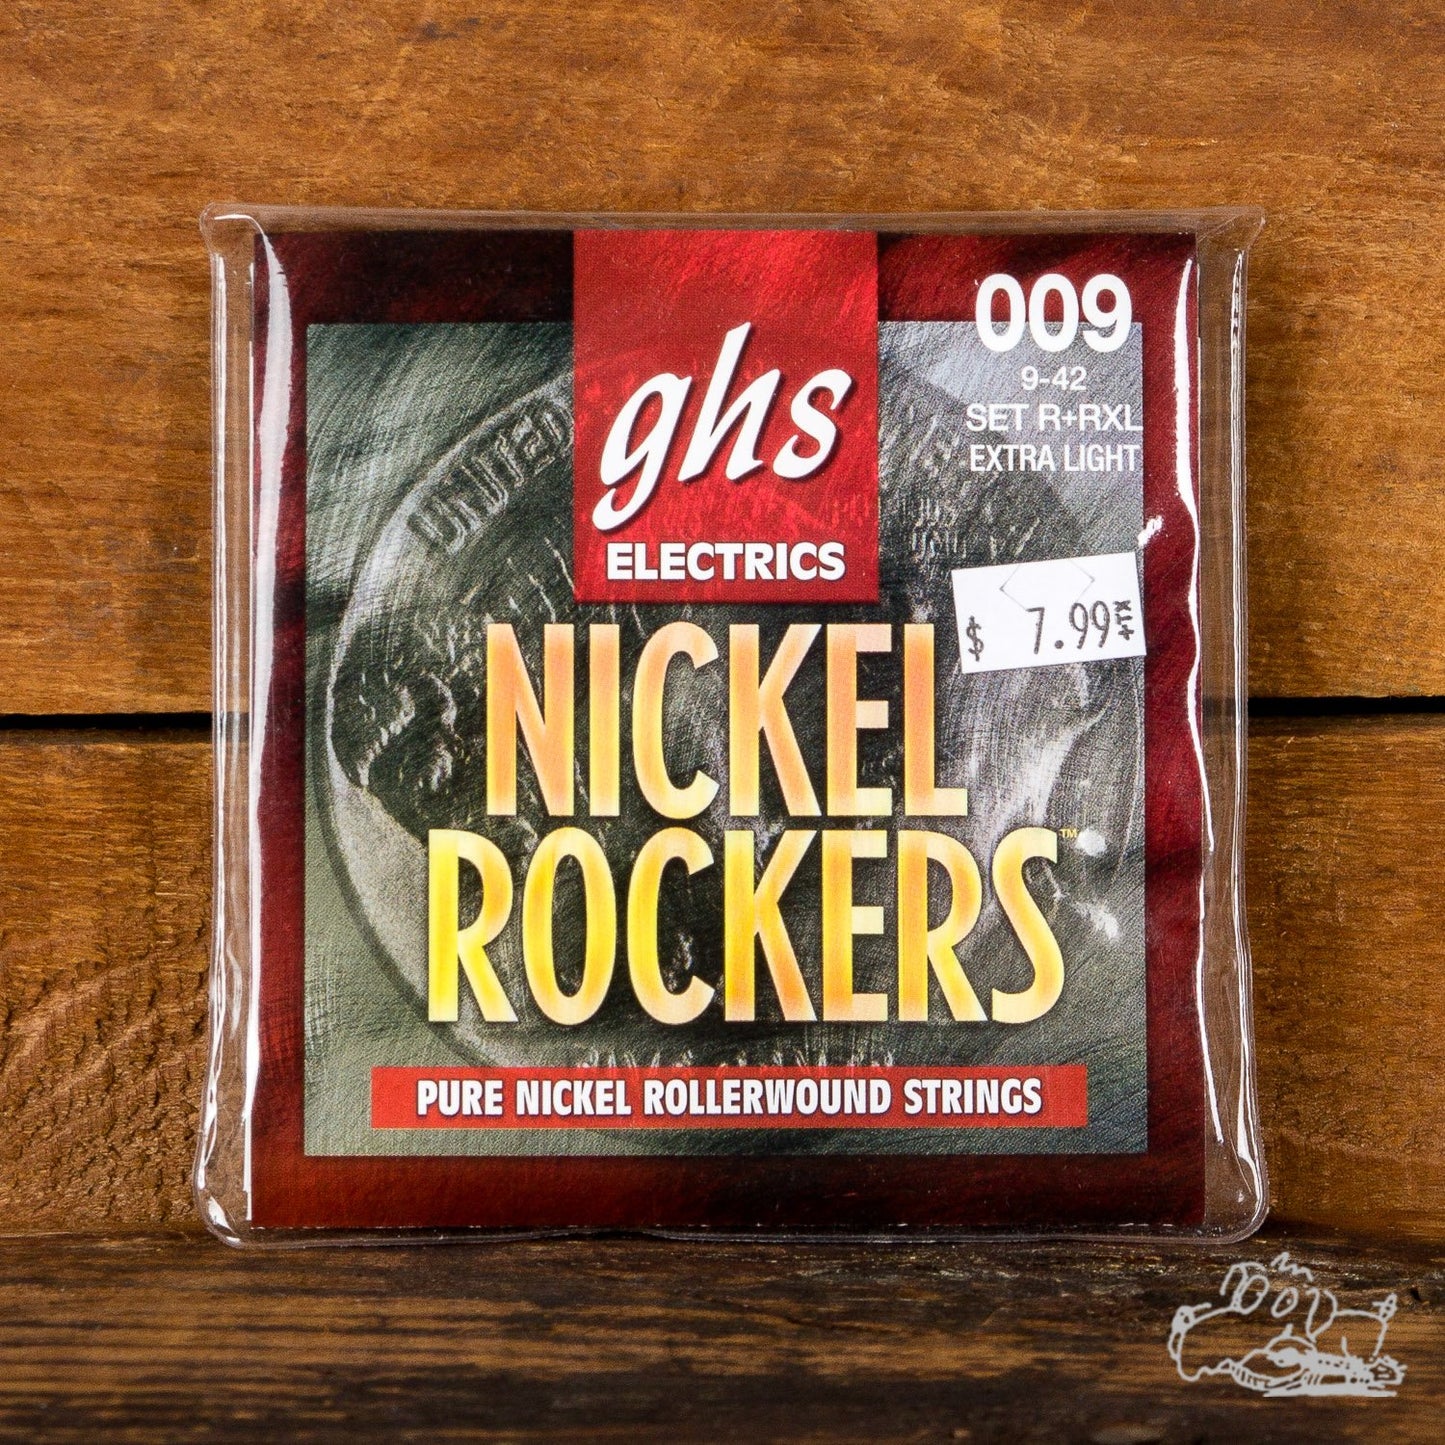 GHS Electrics Nickel Rockers - 9-42 Pure Nickel Rollerwound Guitar Strings